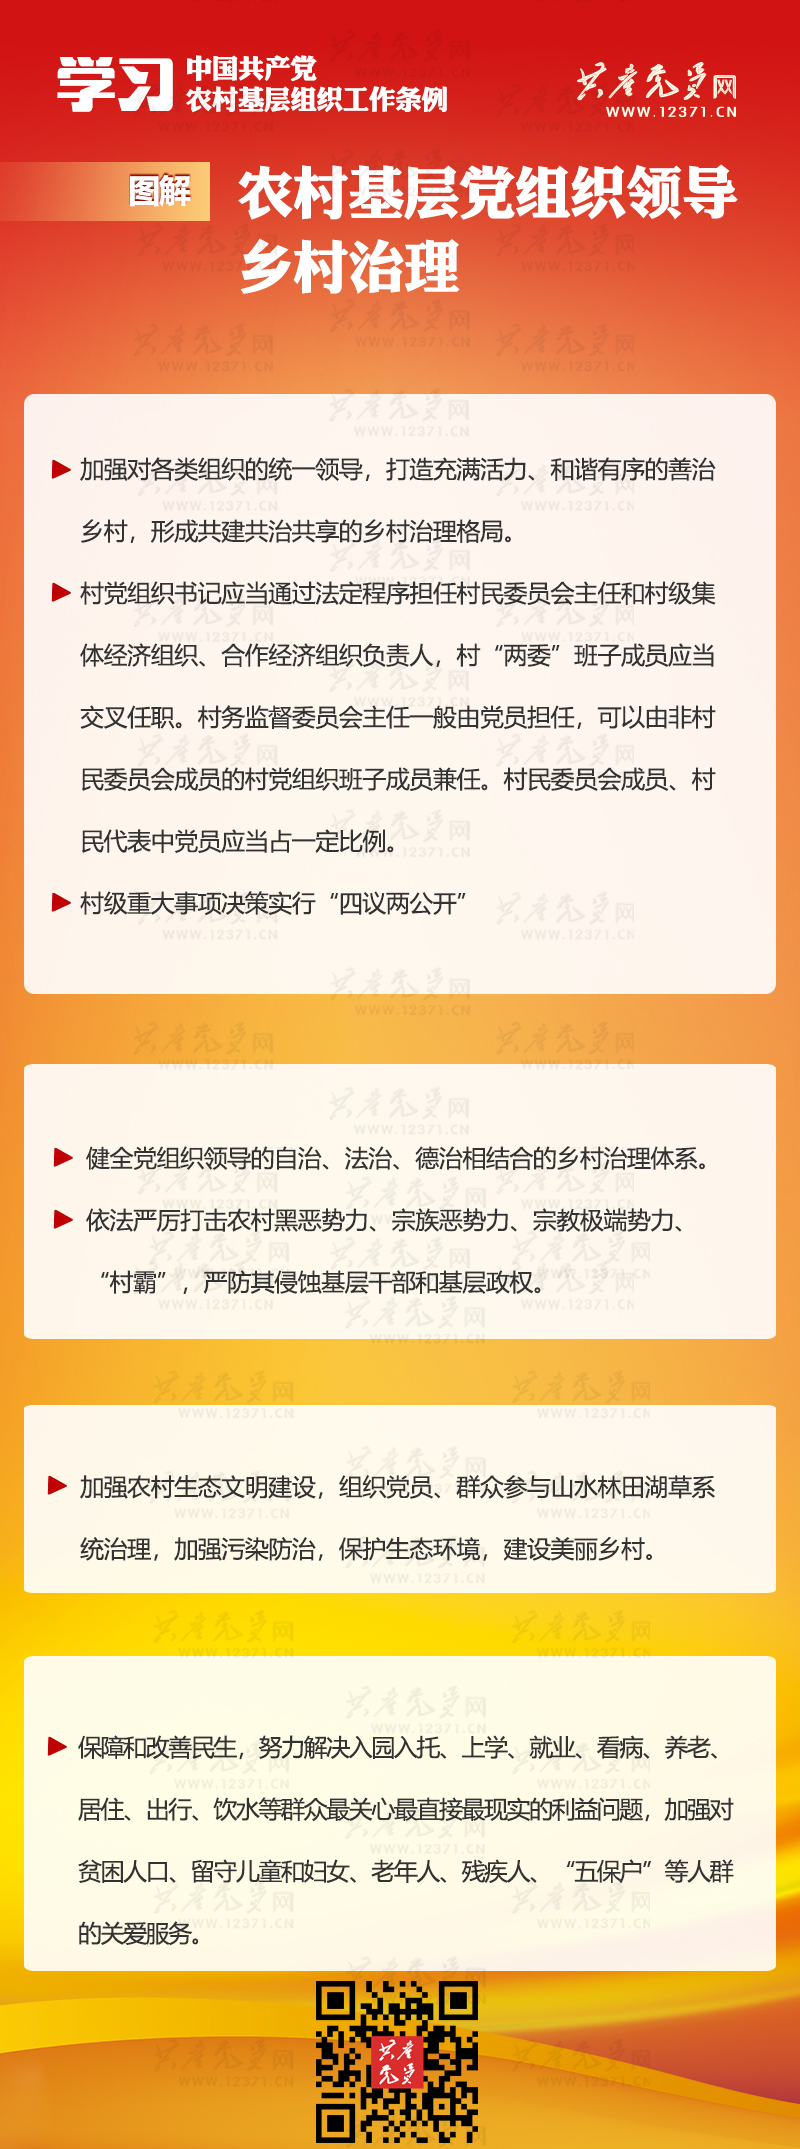 图解《中国共产党农村基层组织工作条例》⑦ 